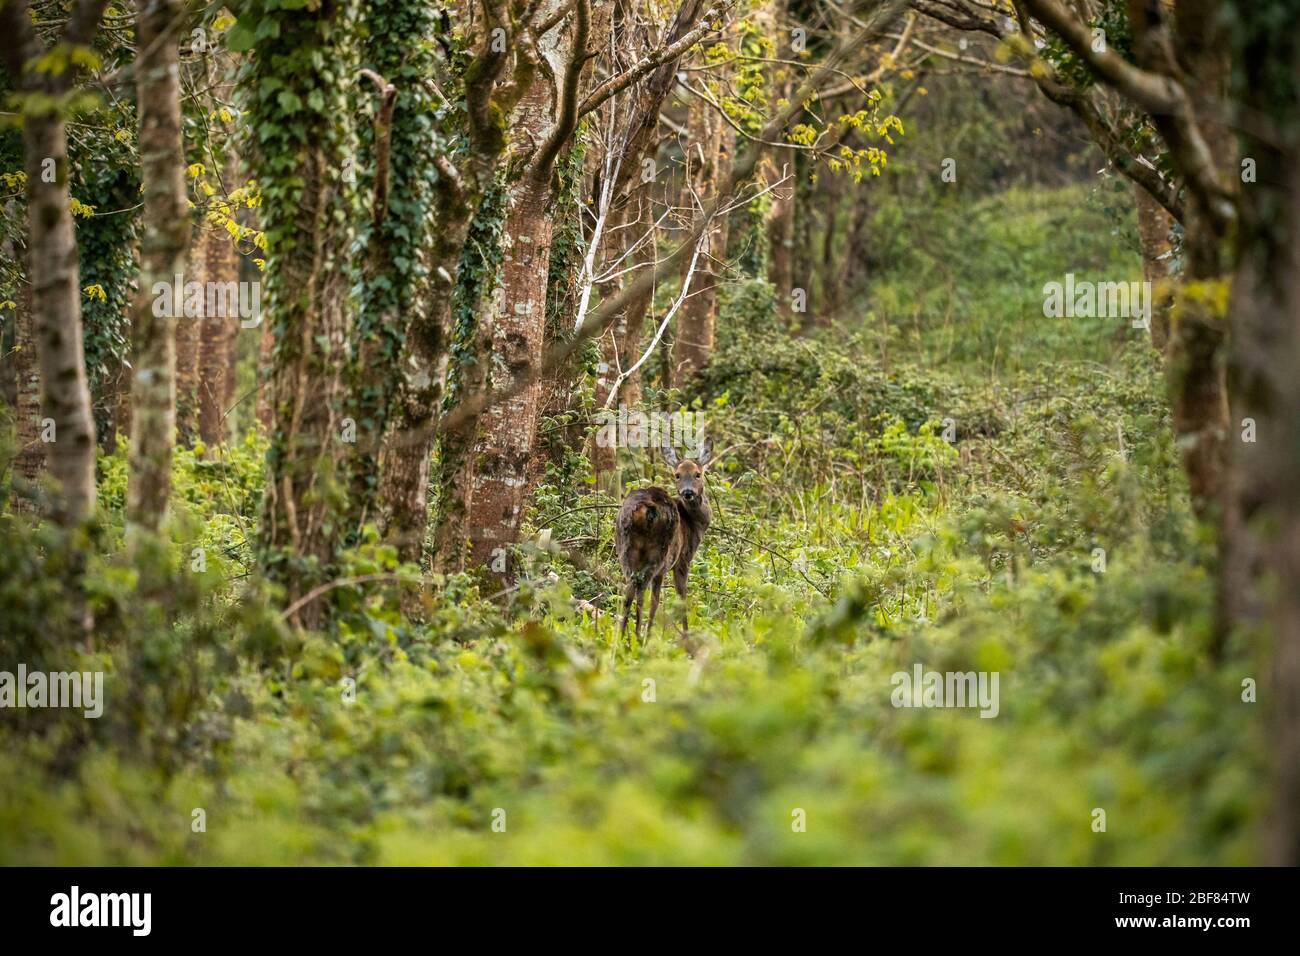 La femelle sauvage, Roe Deer, se tenait dans des bois sauvages entre les arbres. Banque D'Images